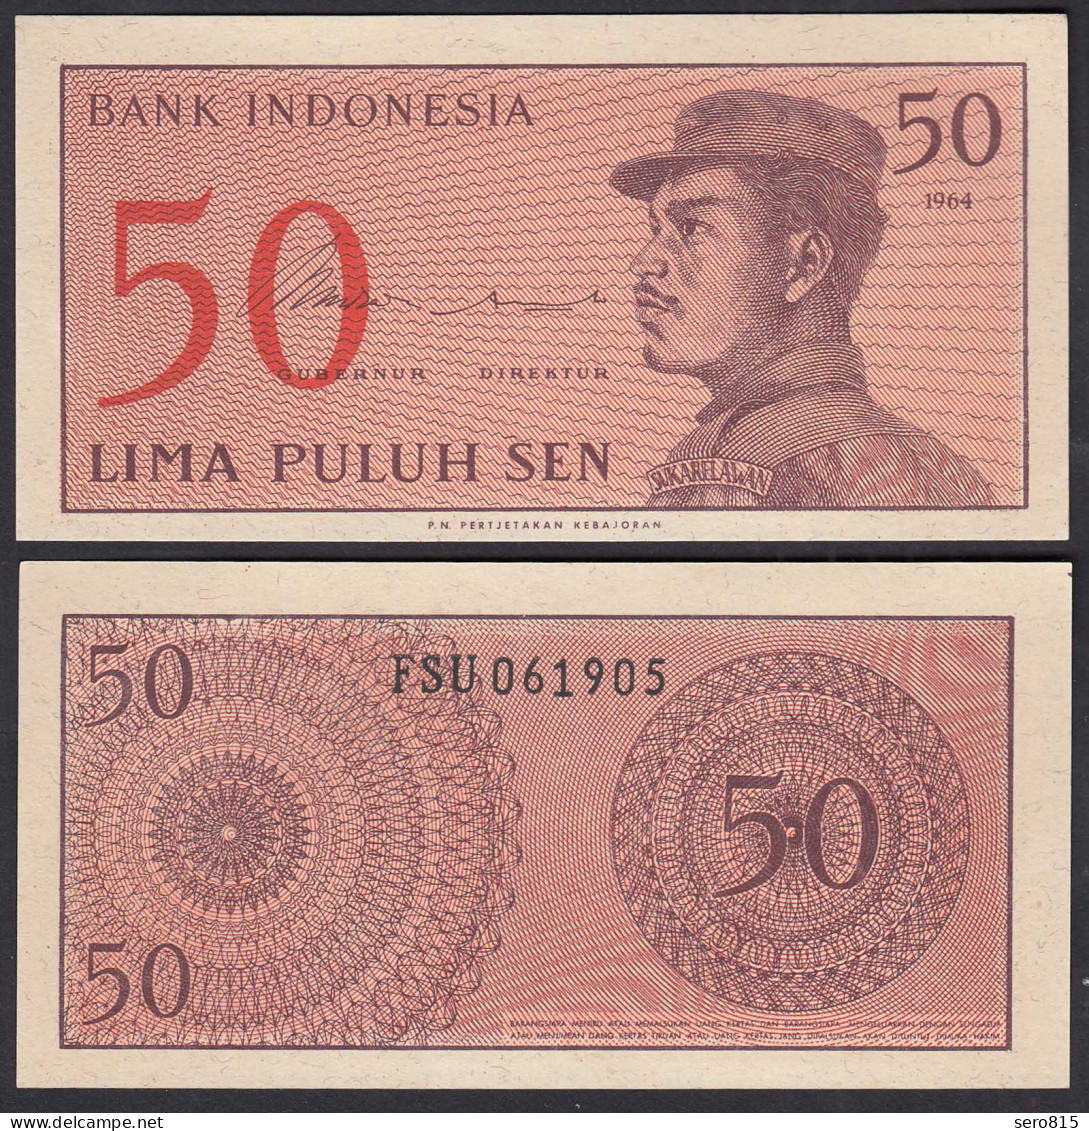 Indonesien - Indonesia 50 Sen 1964 Pick 94 UNC   (31665 - Autres - Asie